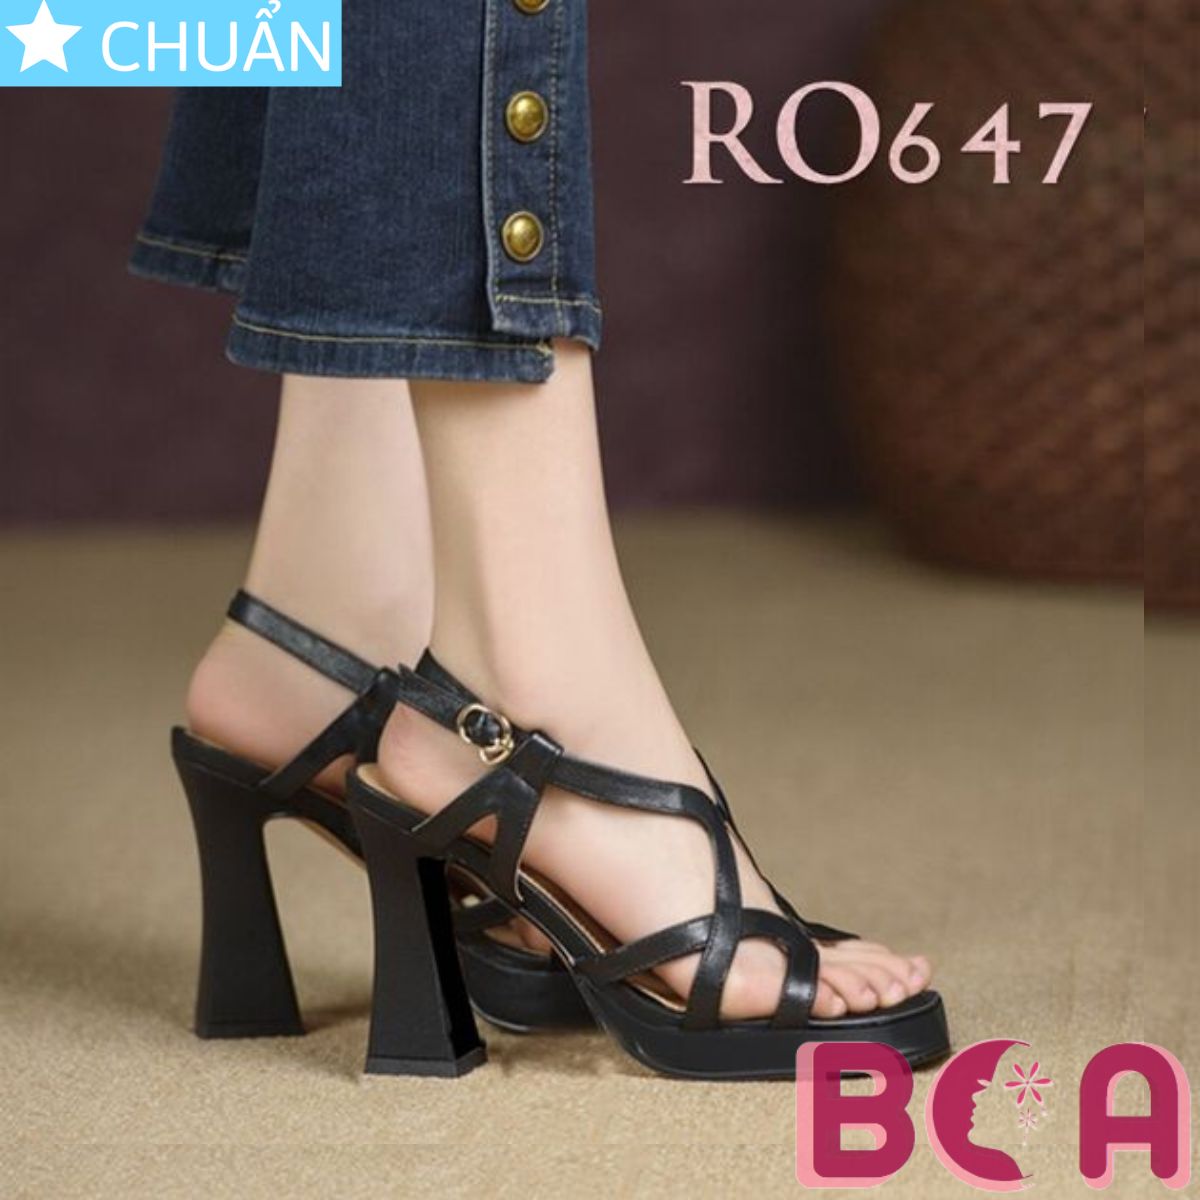 Sandal nữ cao gót 8 phân RO647 ROSATA tại BCASHOP thiết kế thời trang và năng động với sự đan xen độc đáo